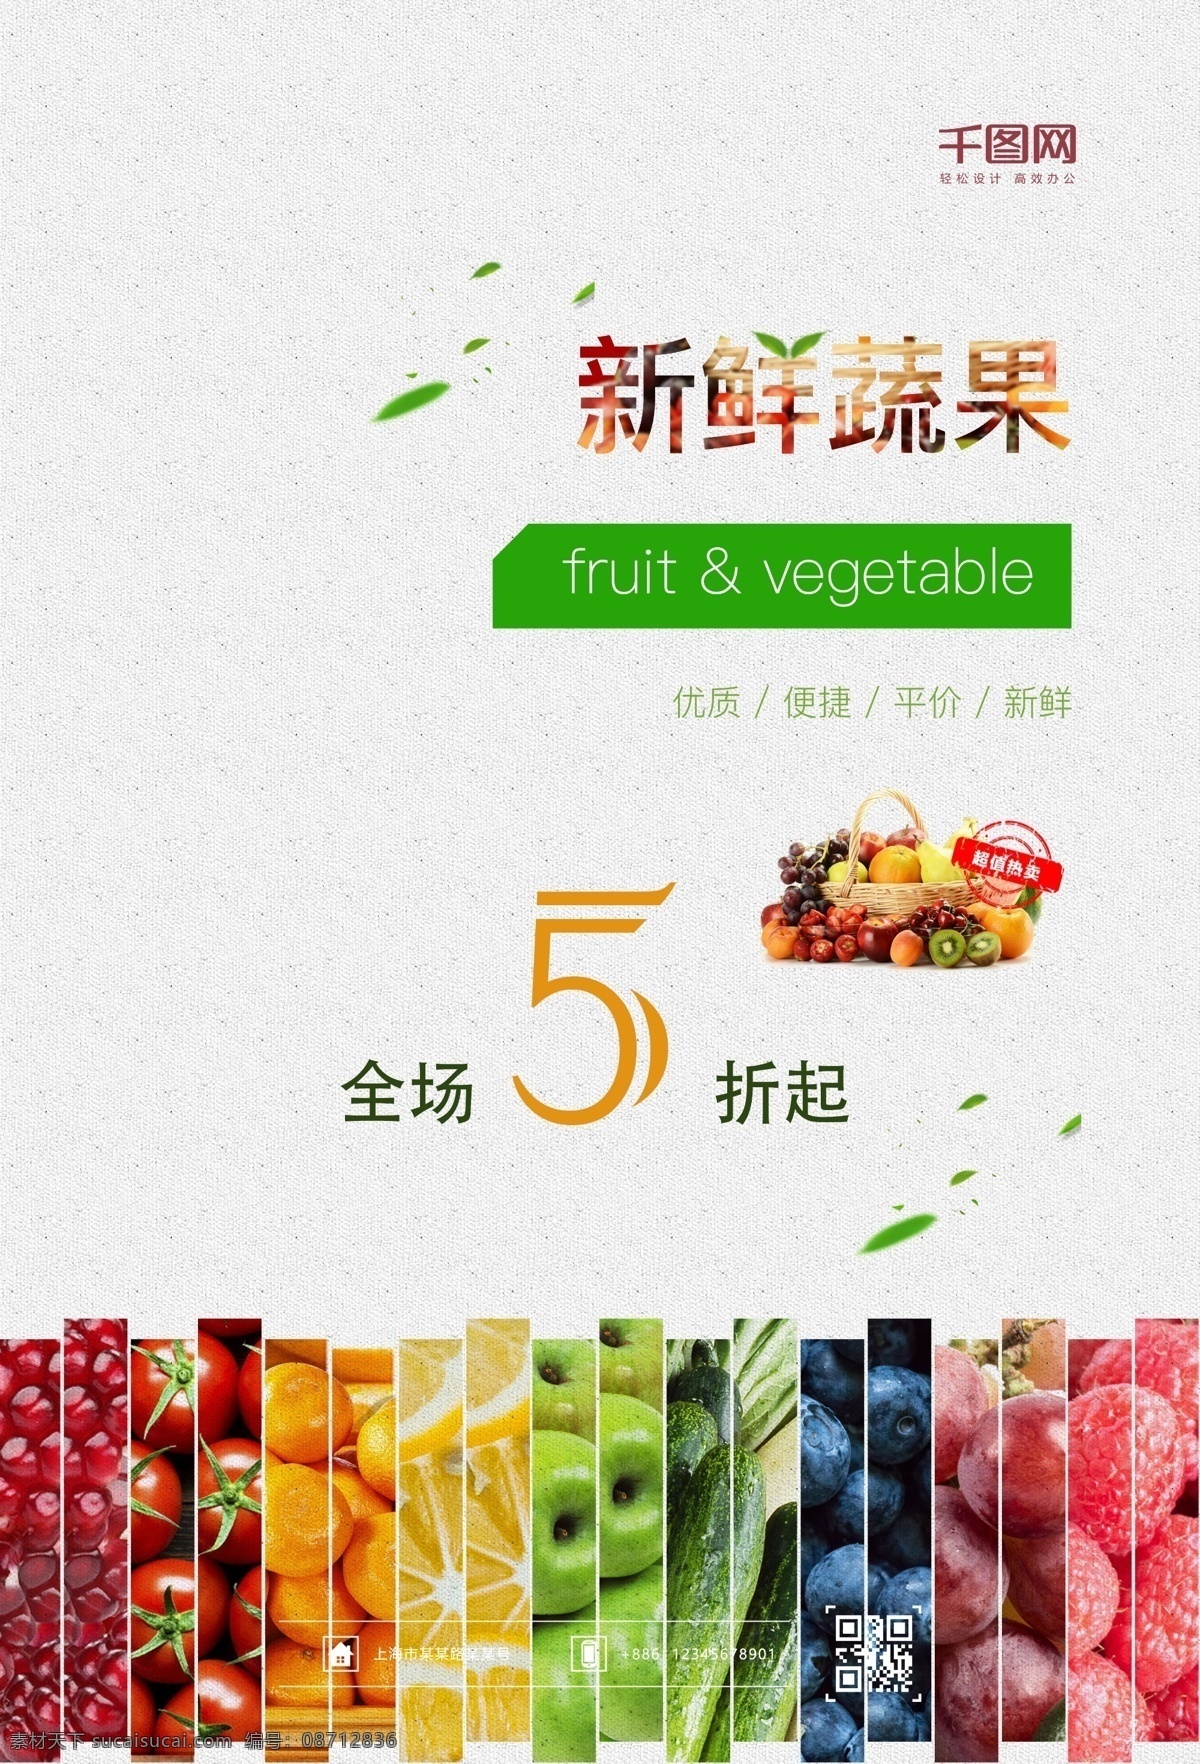 蔬果 促销 蔬果促销 蔬菜 水果 促销海报 水果店 平价 海报 展板